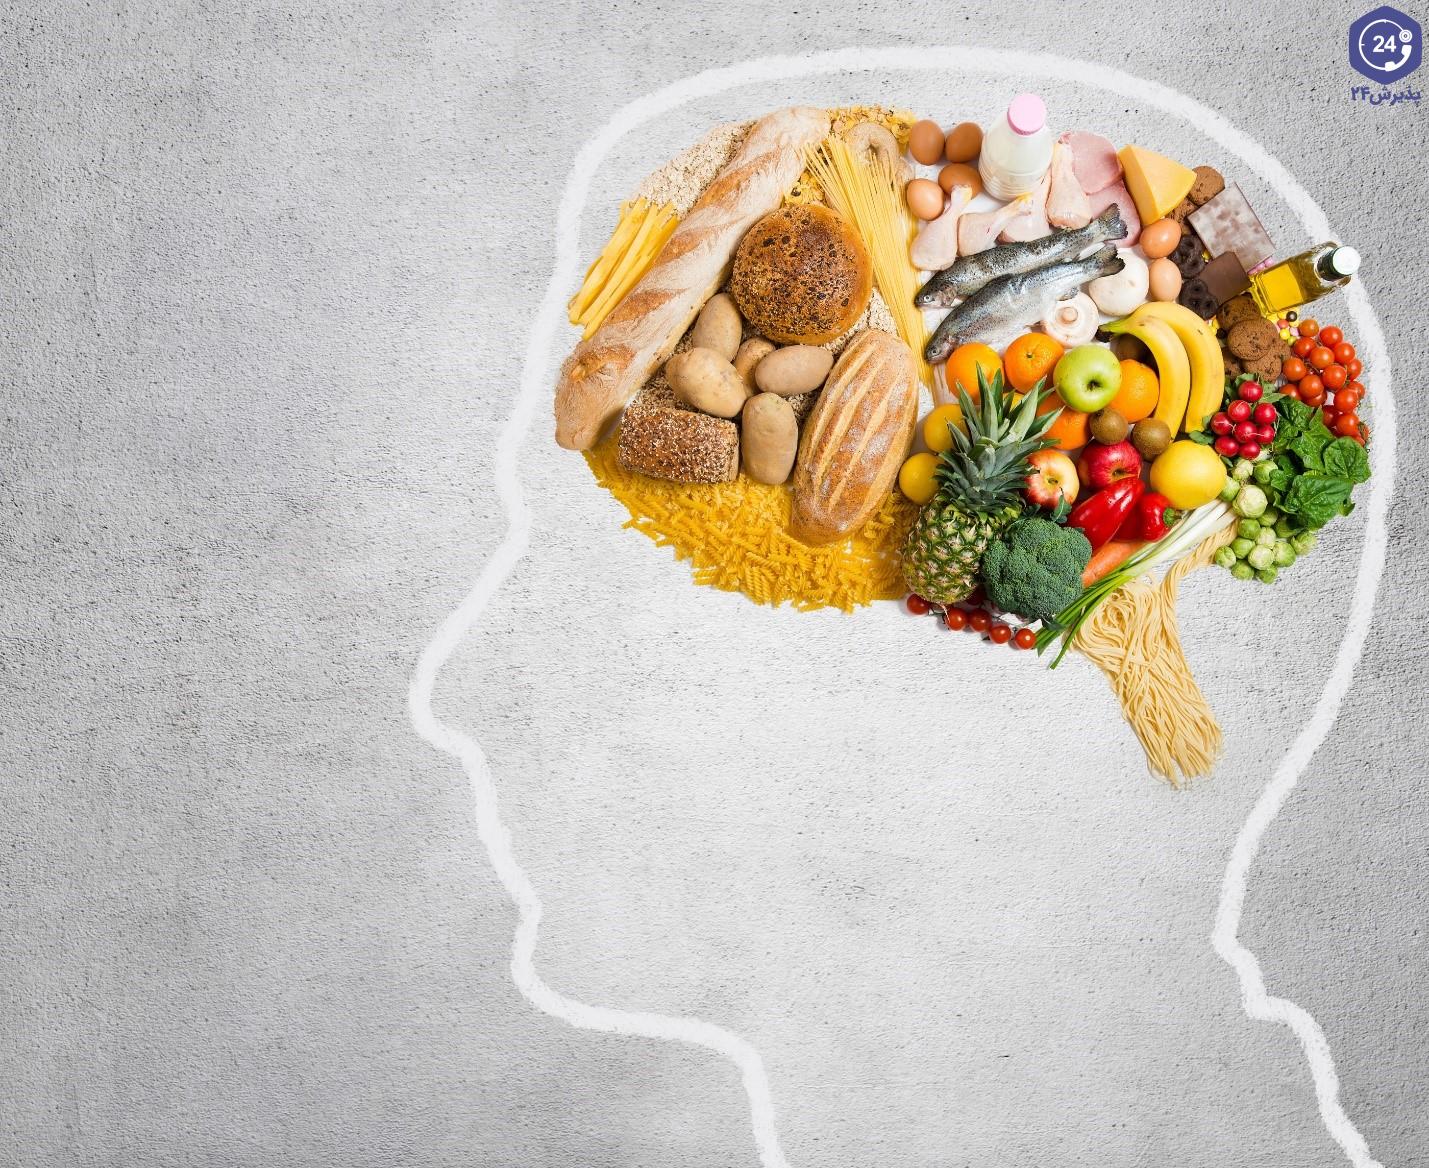 بررسی اثر تغذیه بر مغز و سیستم عصبی +تقویت مغز با تغذیه